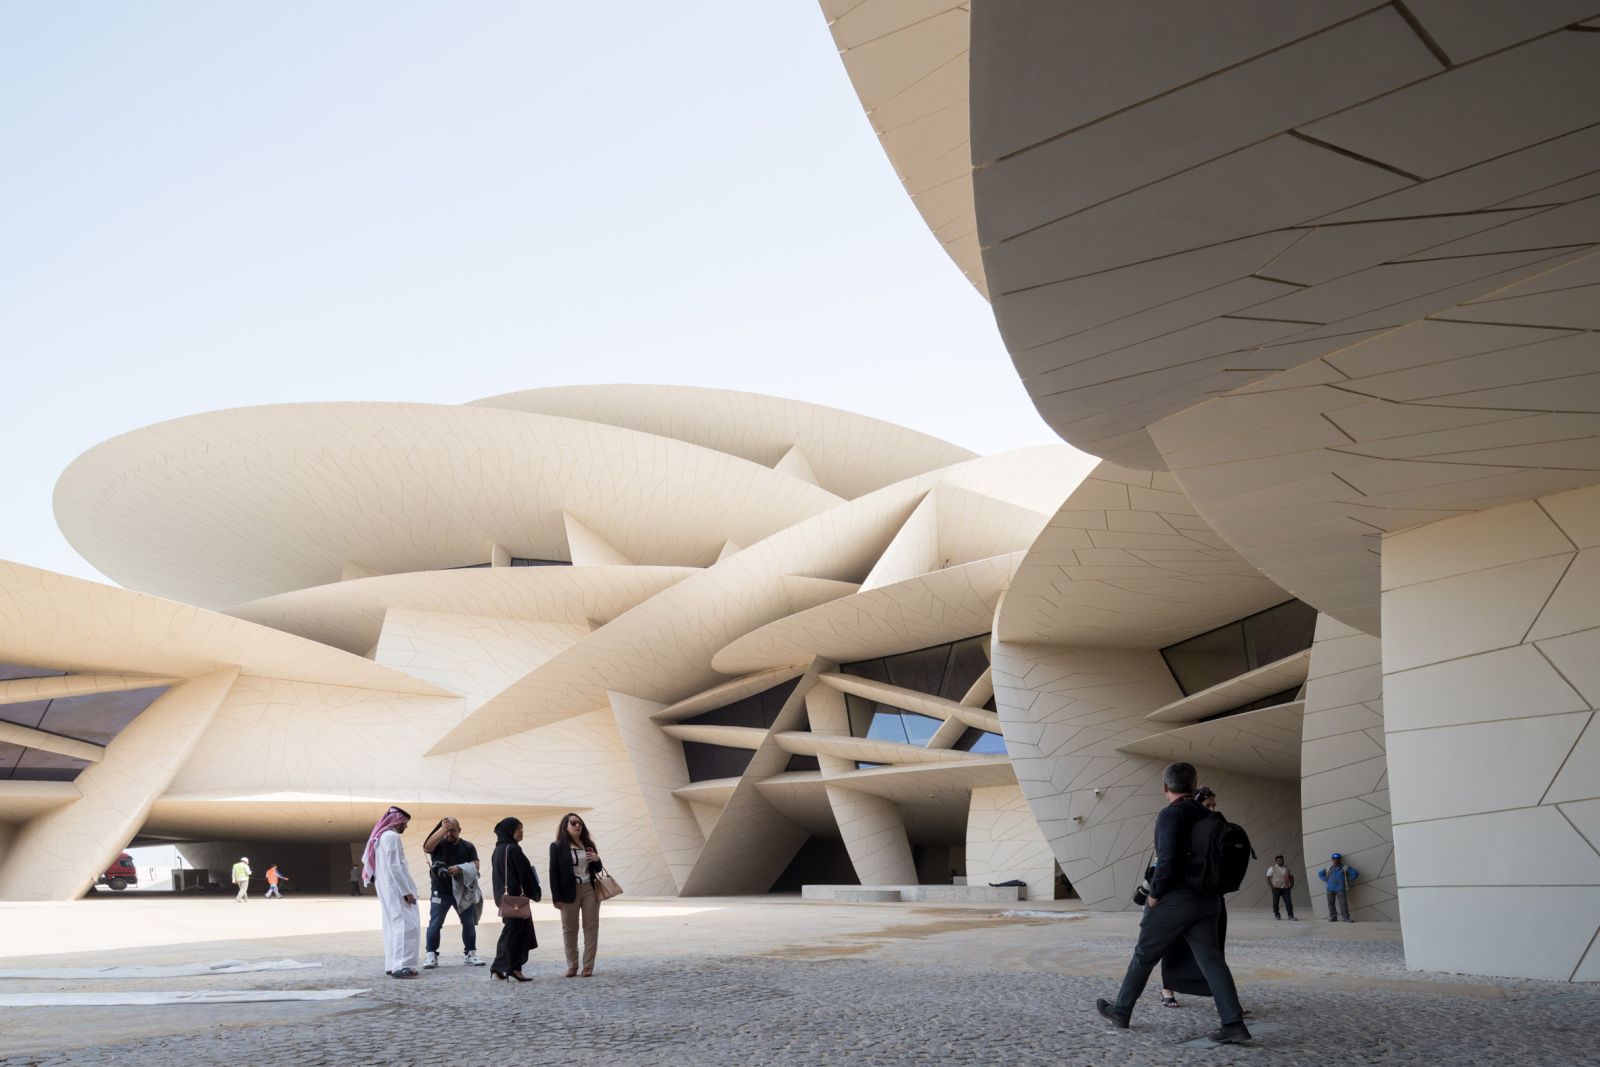 Đây là công trình kiến trúc toà nhà bắt mắt mà du khách không nên bỏ qua khi tới tham quan Doha, Qatar. 